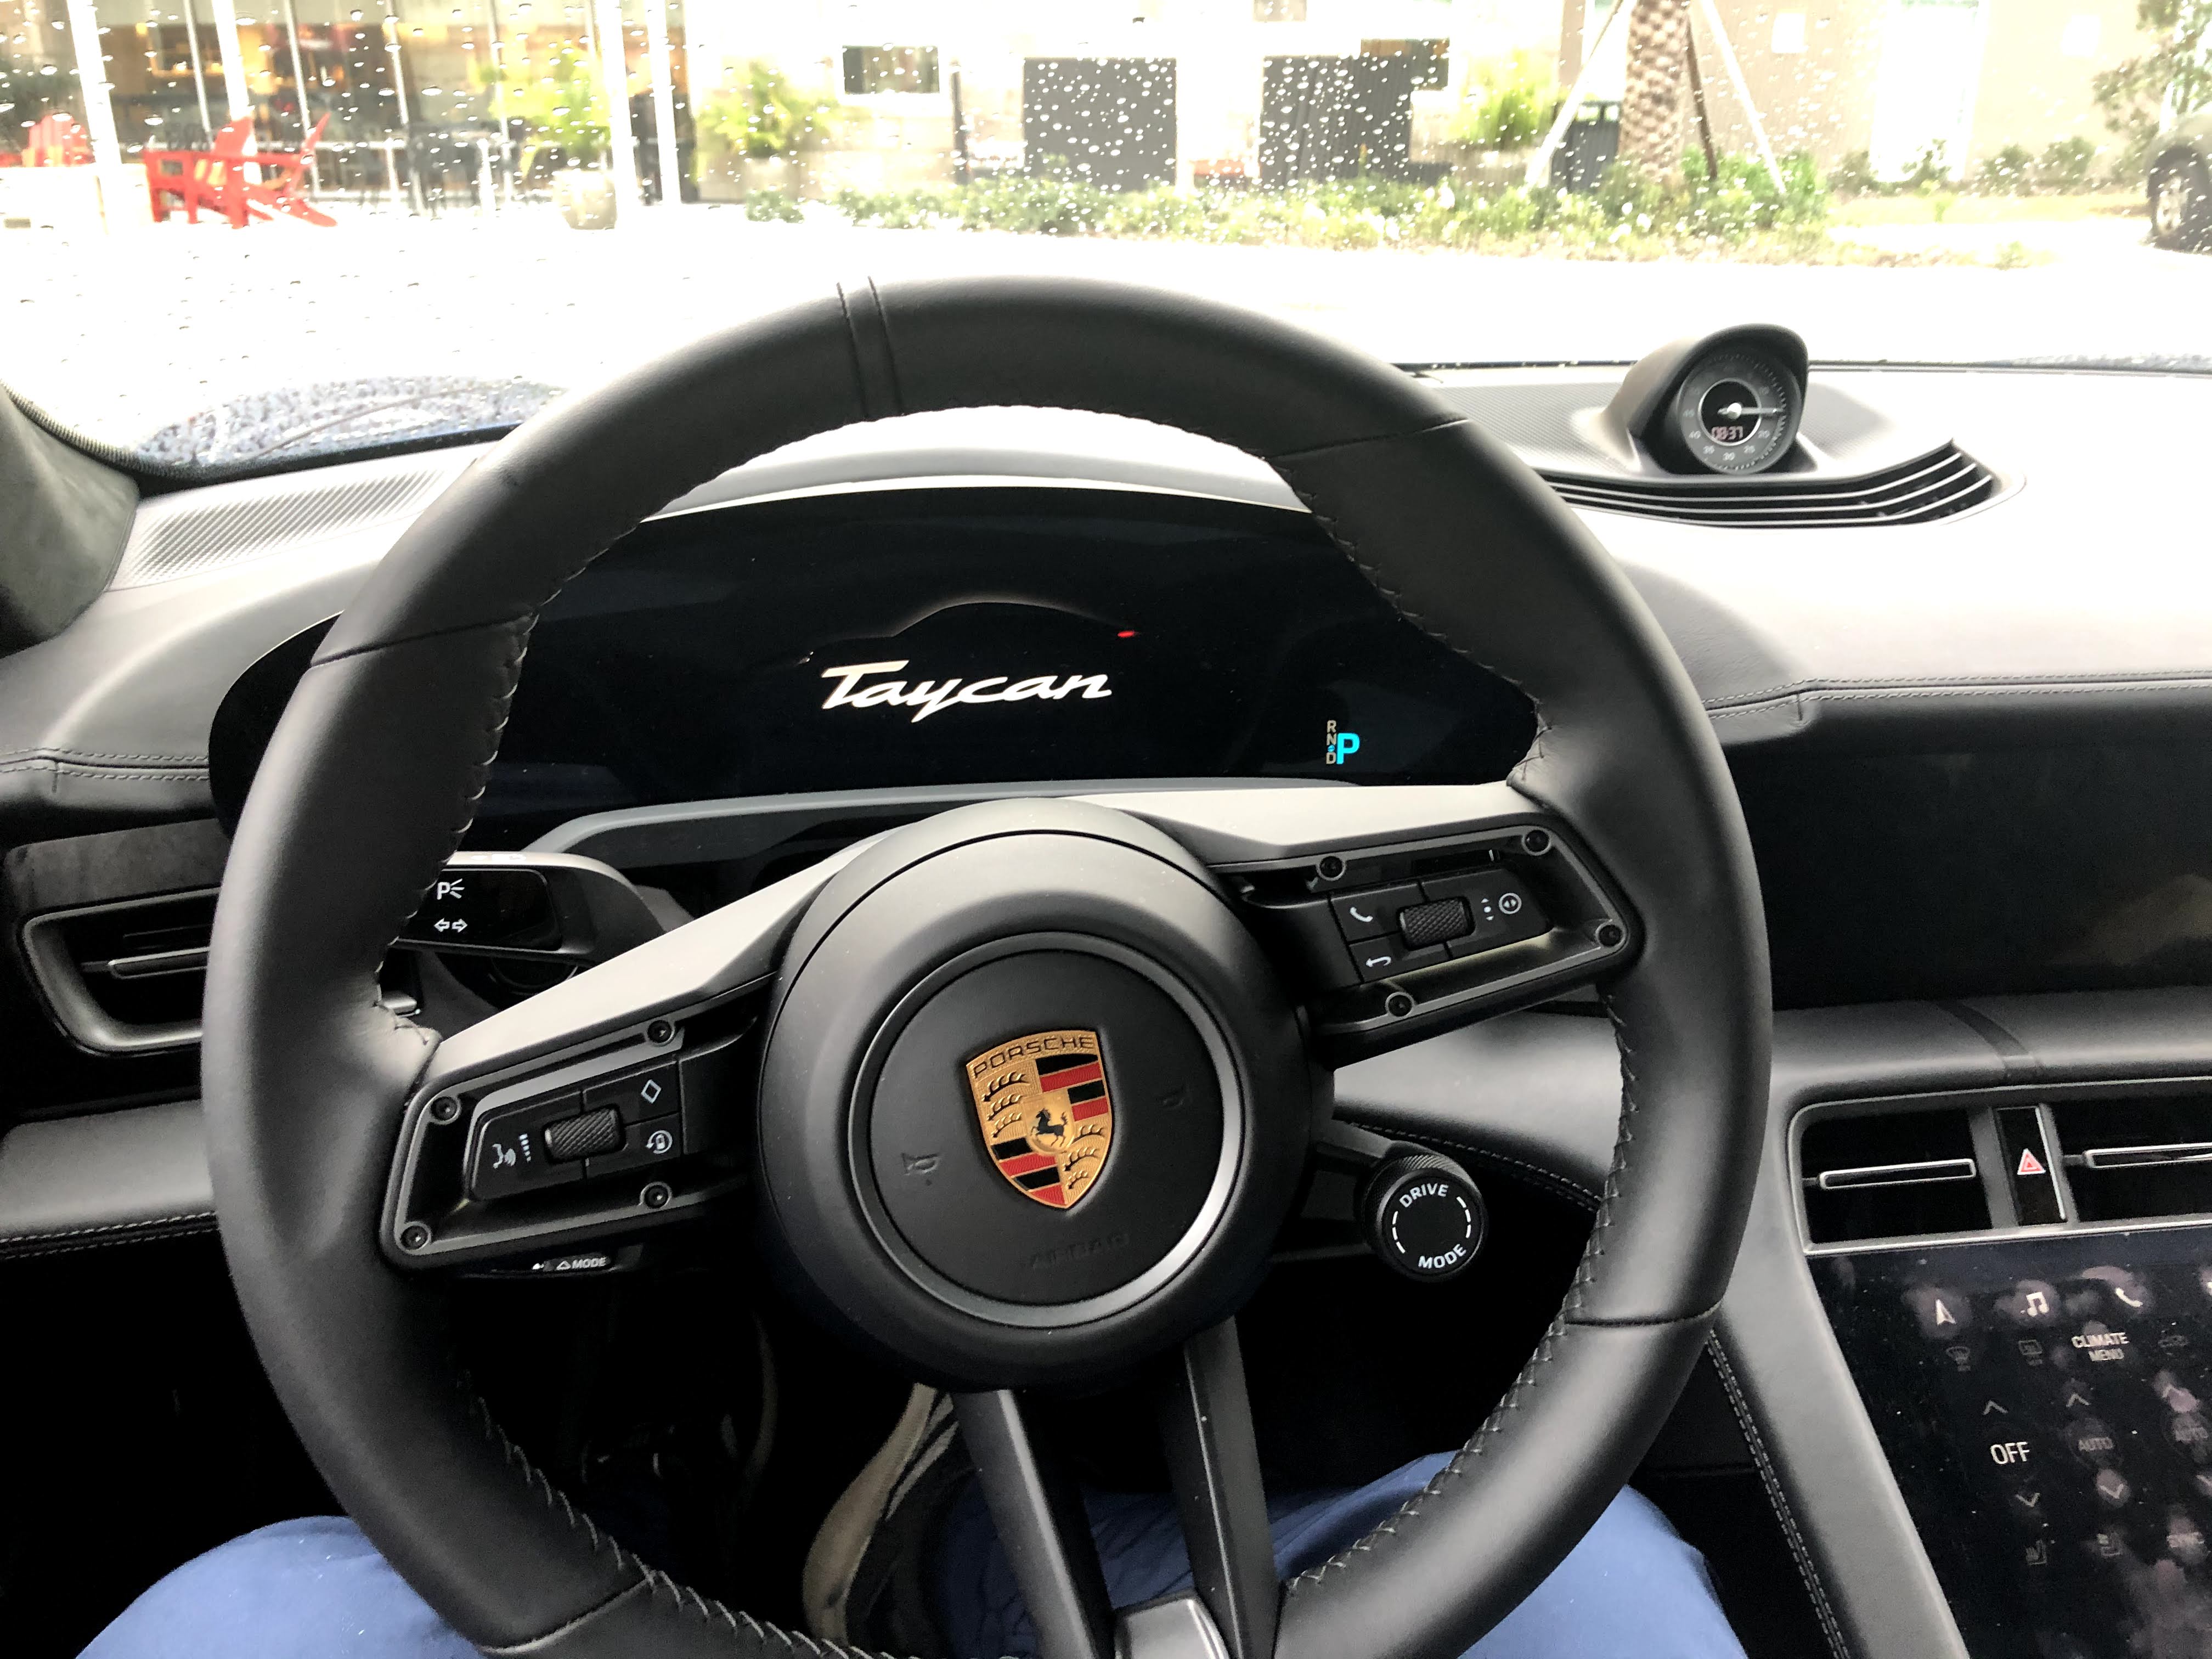 Porsche-Taycan-interior.jpg